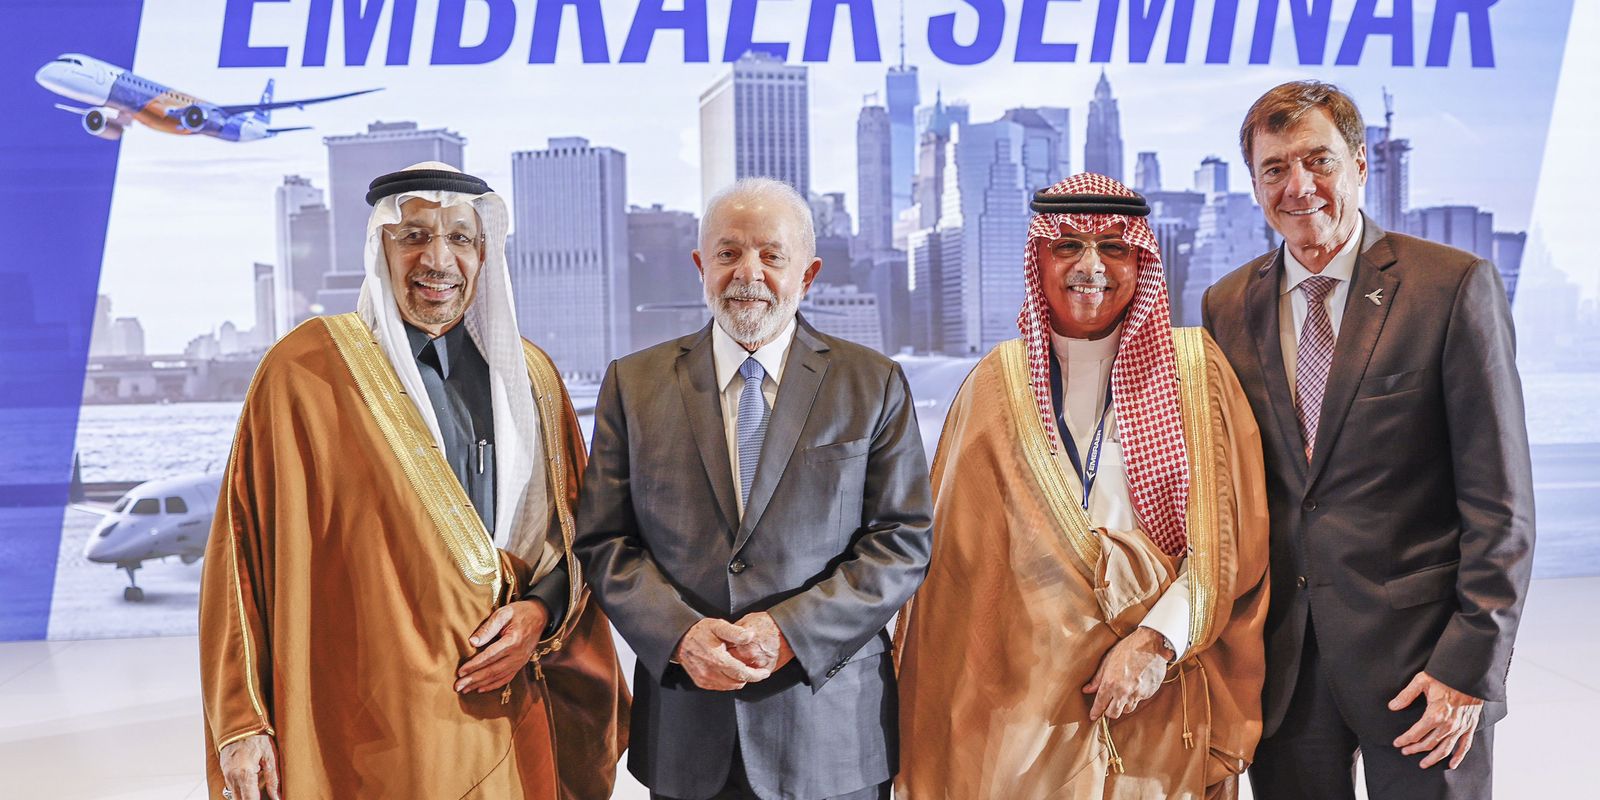 embraer-assina-tres-acordos-de-investimentos-na-arabia-saudita